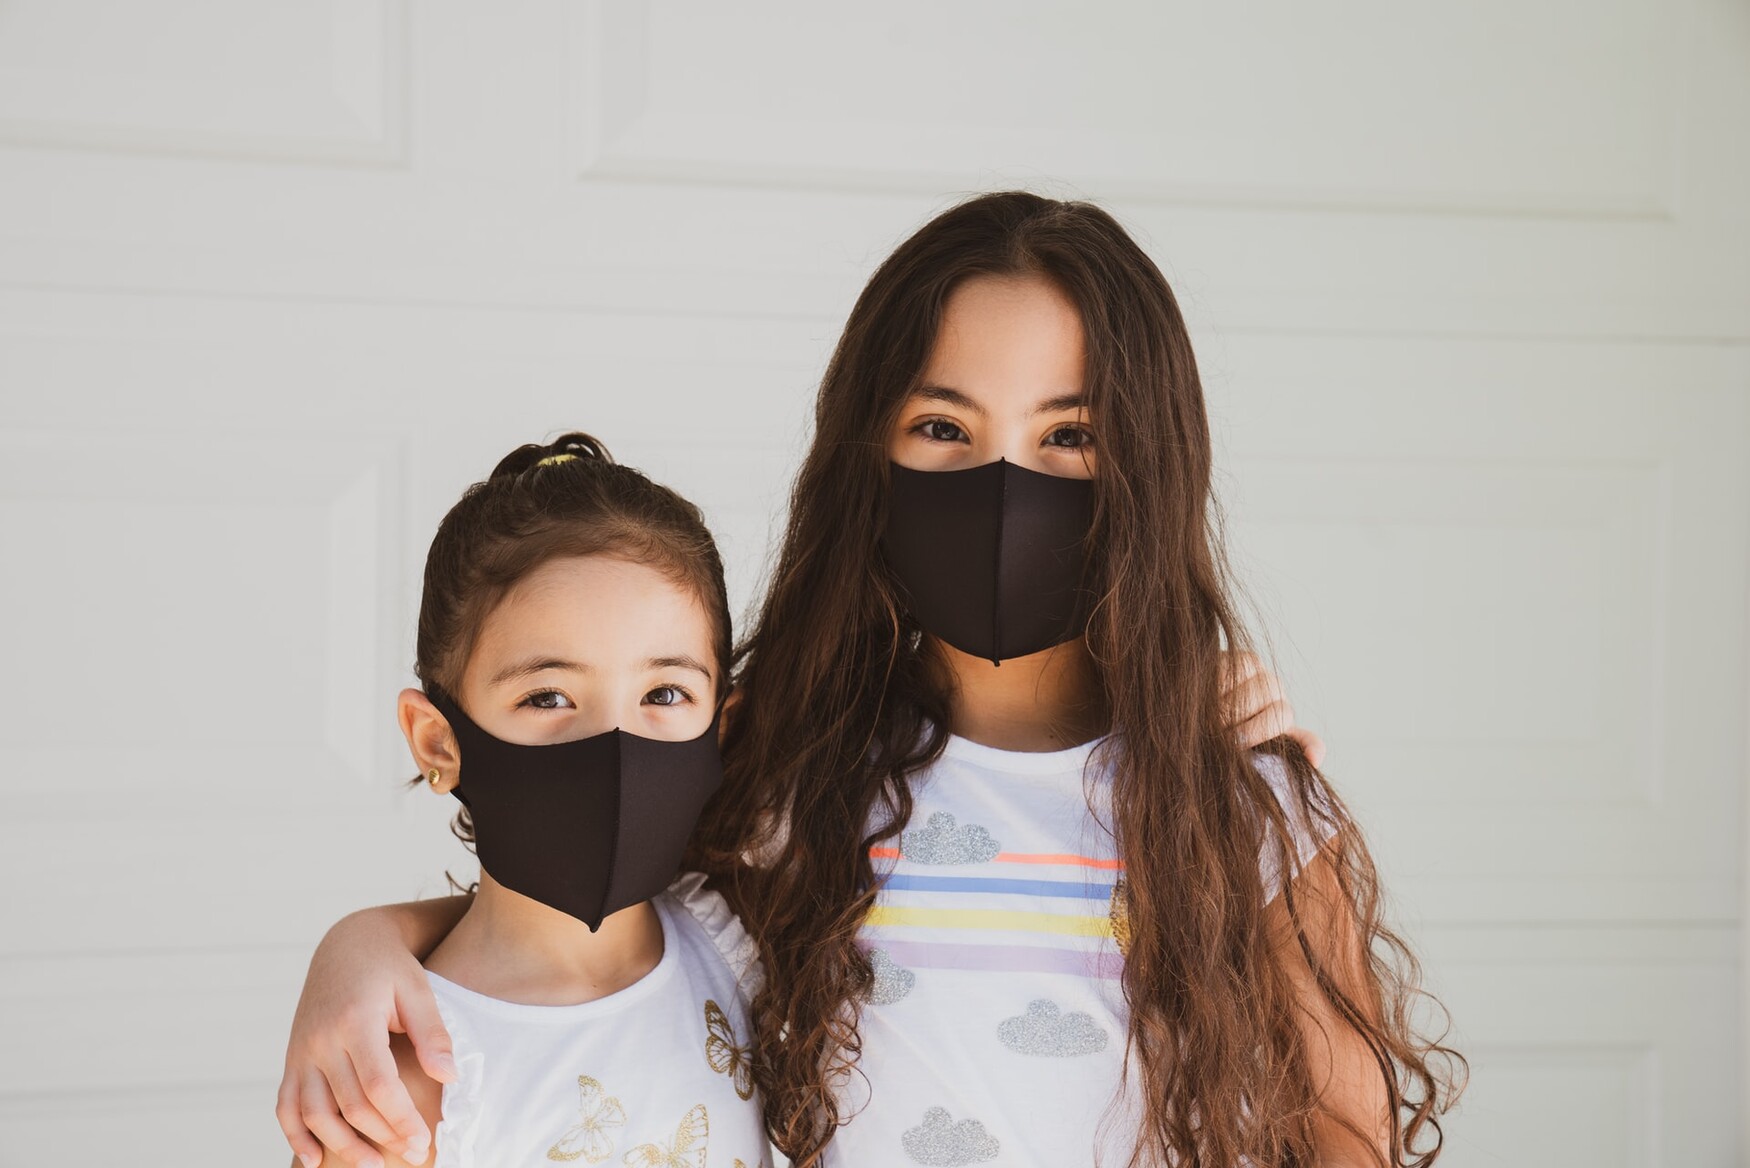 Children with masks